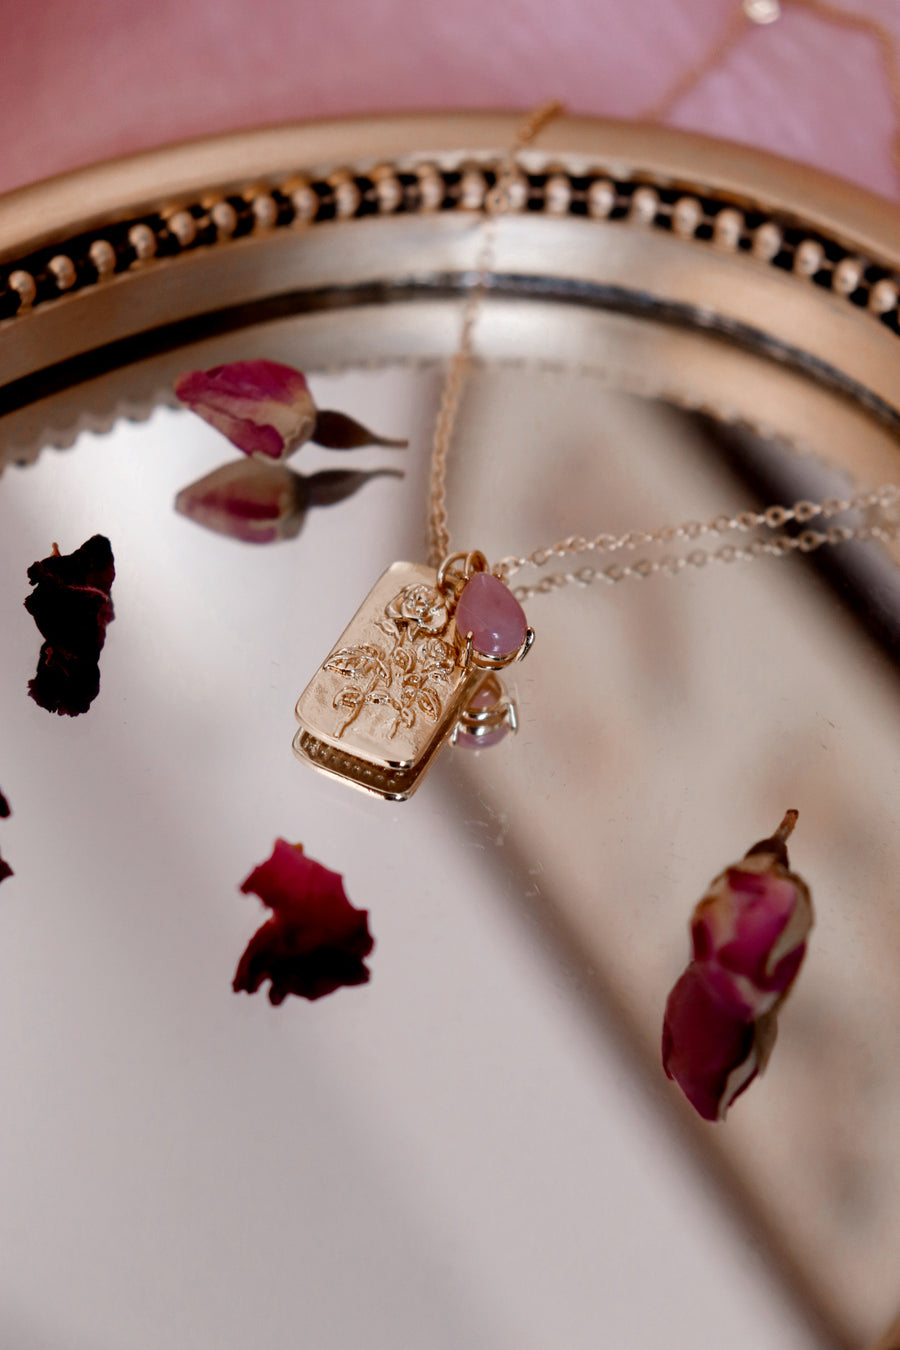 The mystic rose | rose quartz necklace